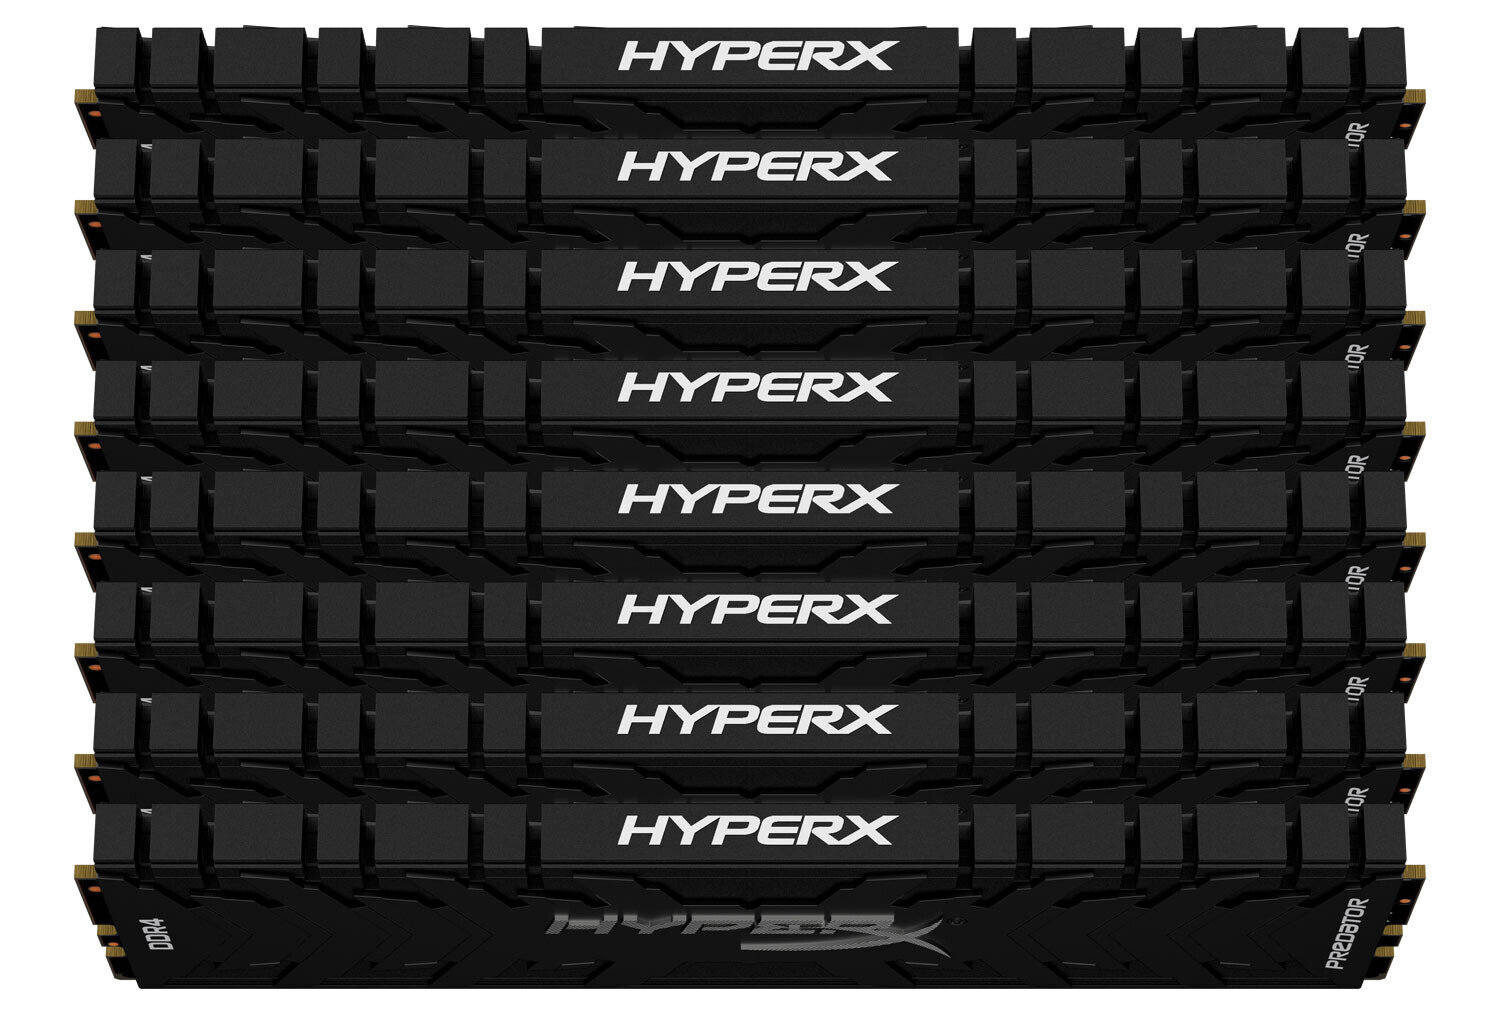 HyperX Predator (2020)